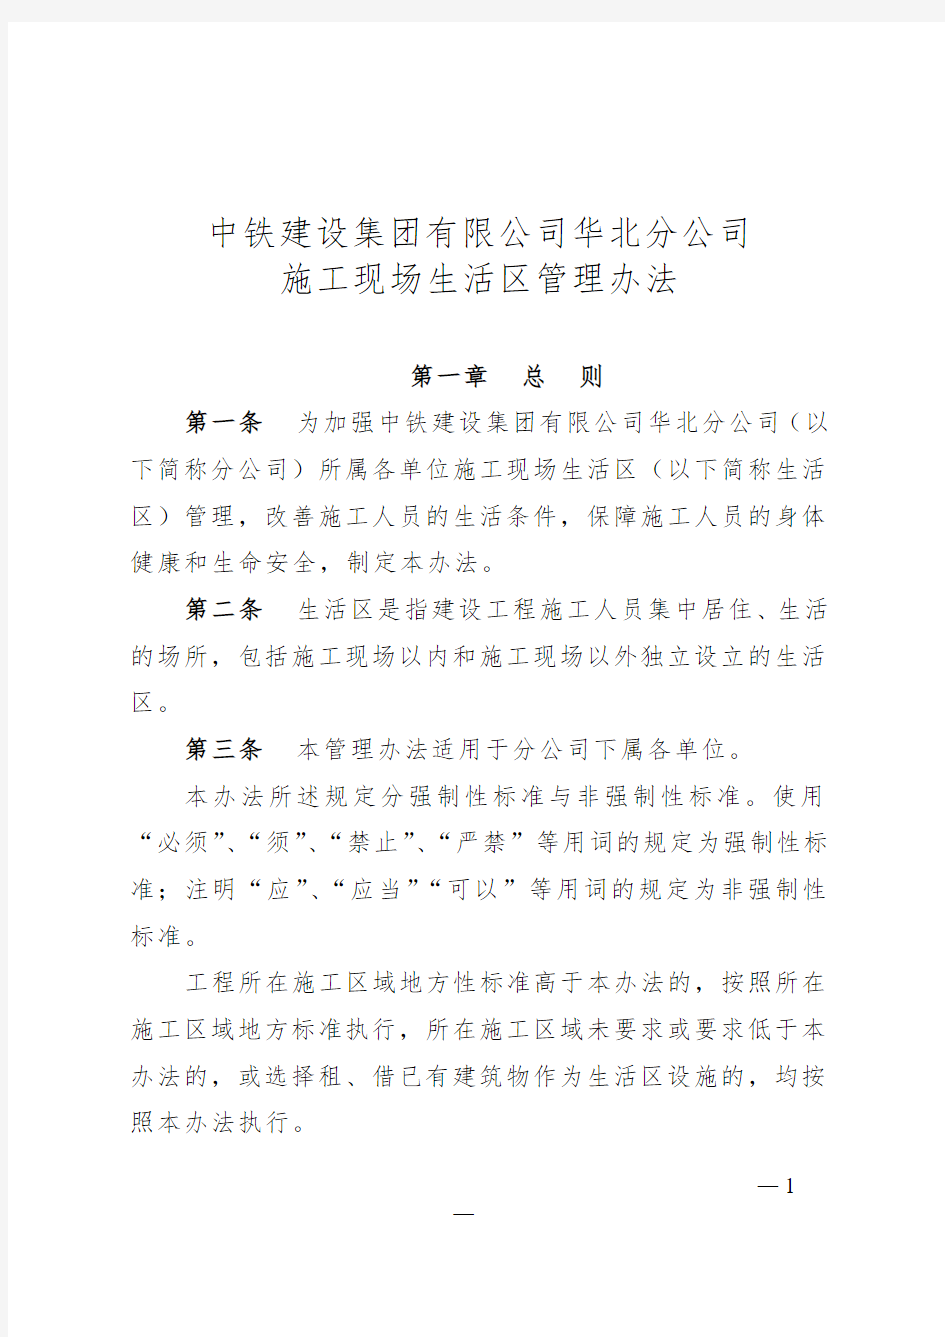 中铁建设集团华北分公司施工现场生活区管理办法